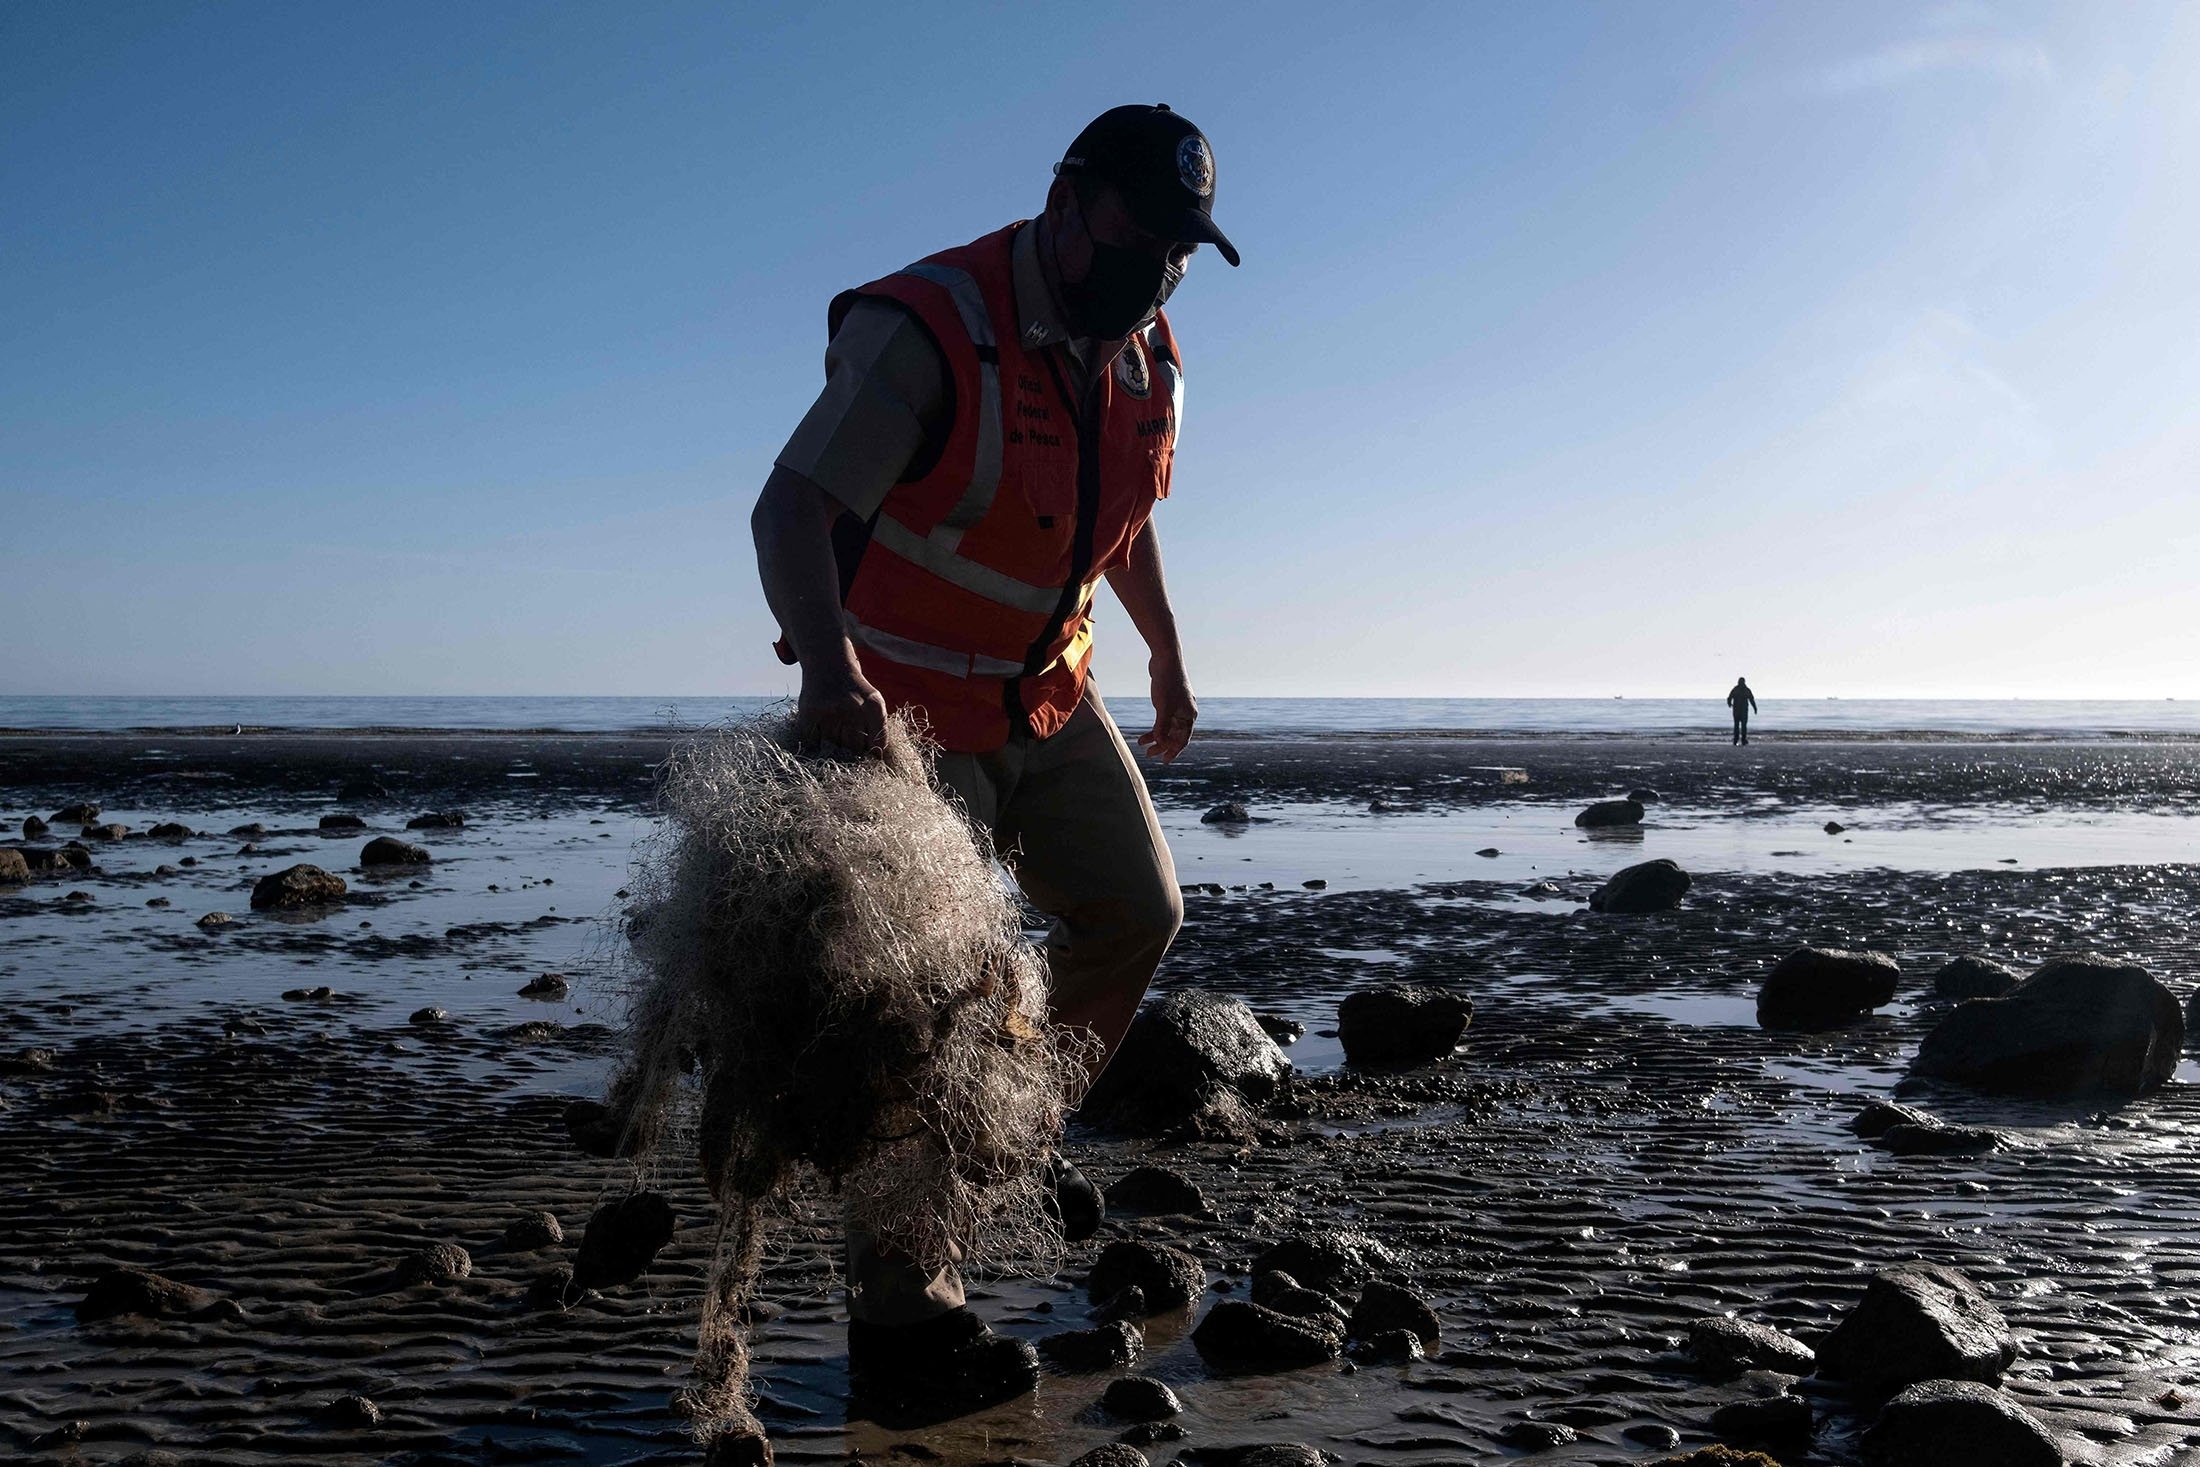 Un membre de l'autorité mexicaine de la pêche et de l'environnement est vu lors d'une opération de recherche de filets de pêche illégaux à San Felipe, dans le golfe de Californie, État de Basse-Californie, nord-ouest du Mexique, le 31 mars 2022. (Photo AFP)